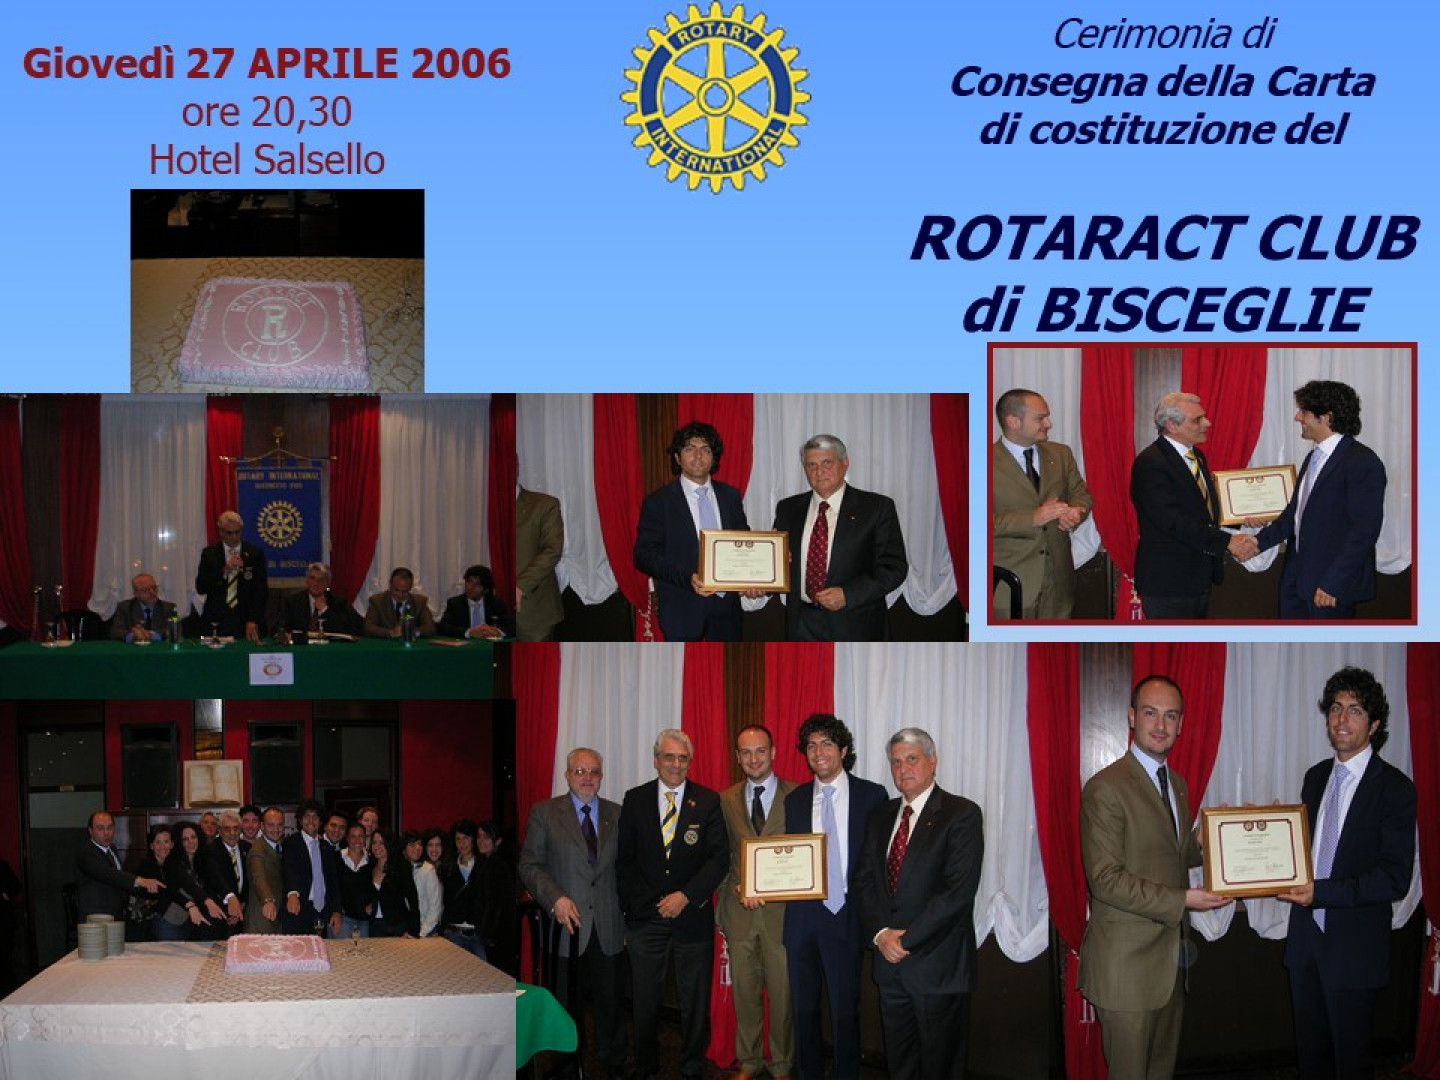 Cerimonia di Consegna della Carta di costituzione del Rotaract Club di Bisceglie